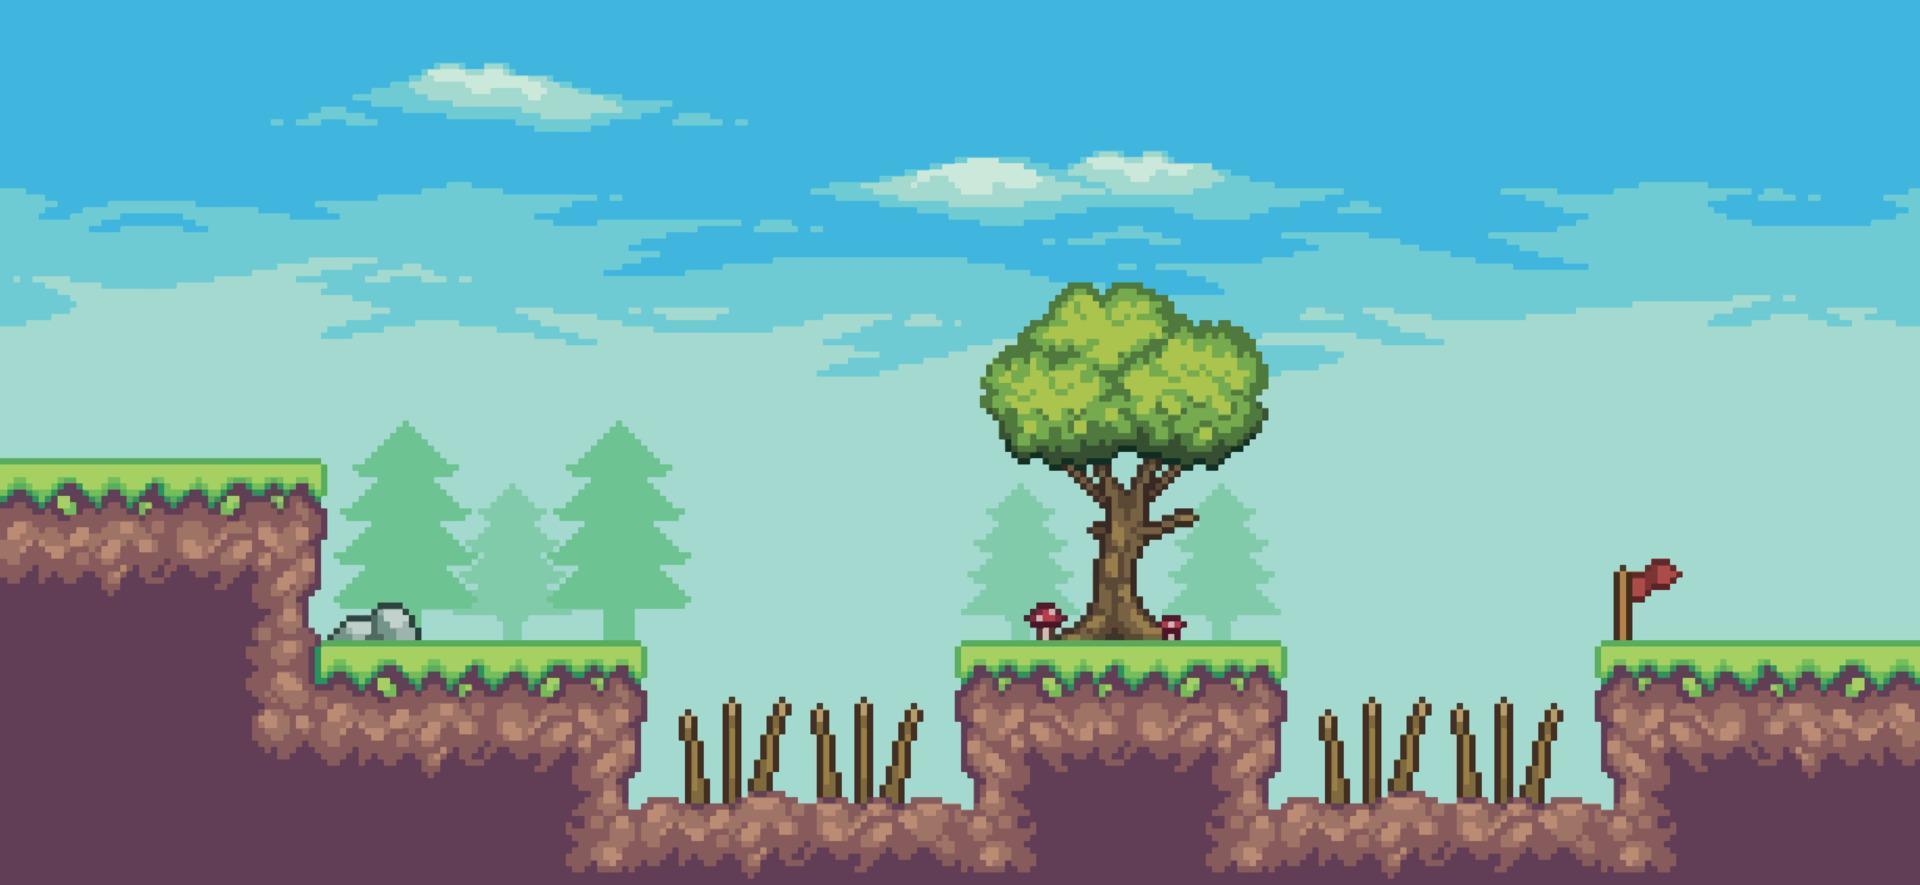 scène de jeu d'arcade pixel art avec des arbres, des épines, des nuages, des pierres et un fond de drapeau 8bit vecteur